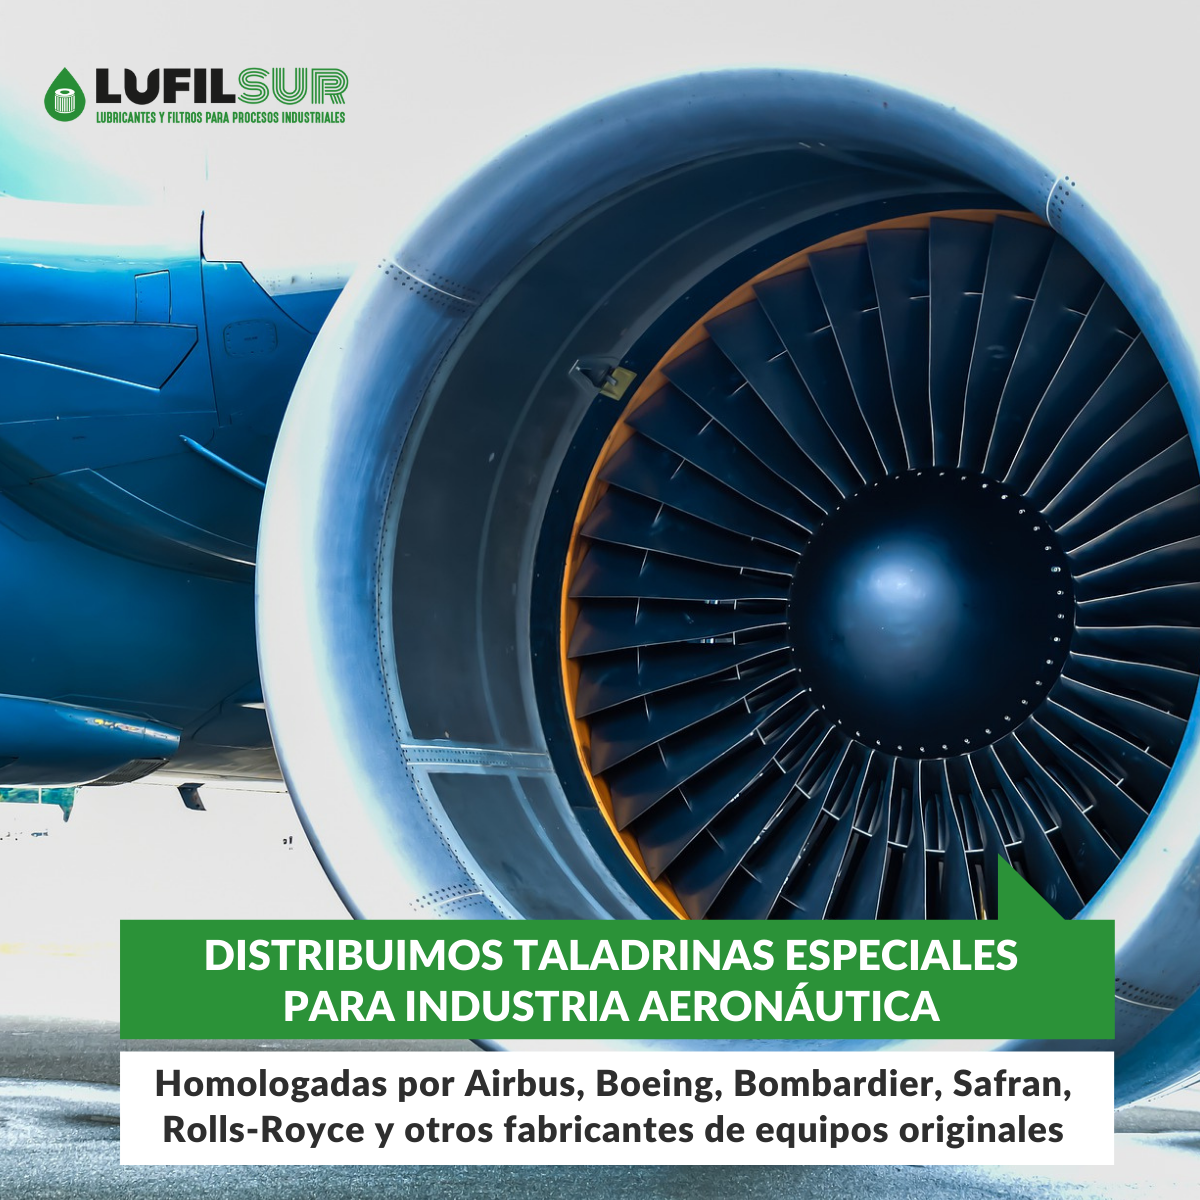 lufilsur distribuye taladrina homologada por el sector aeronáutico